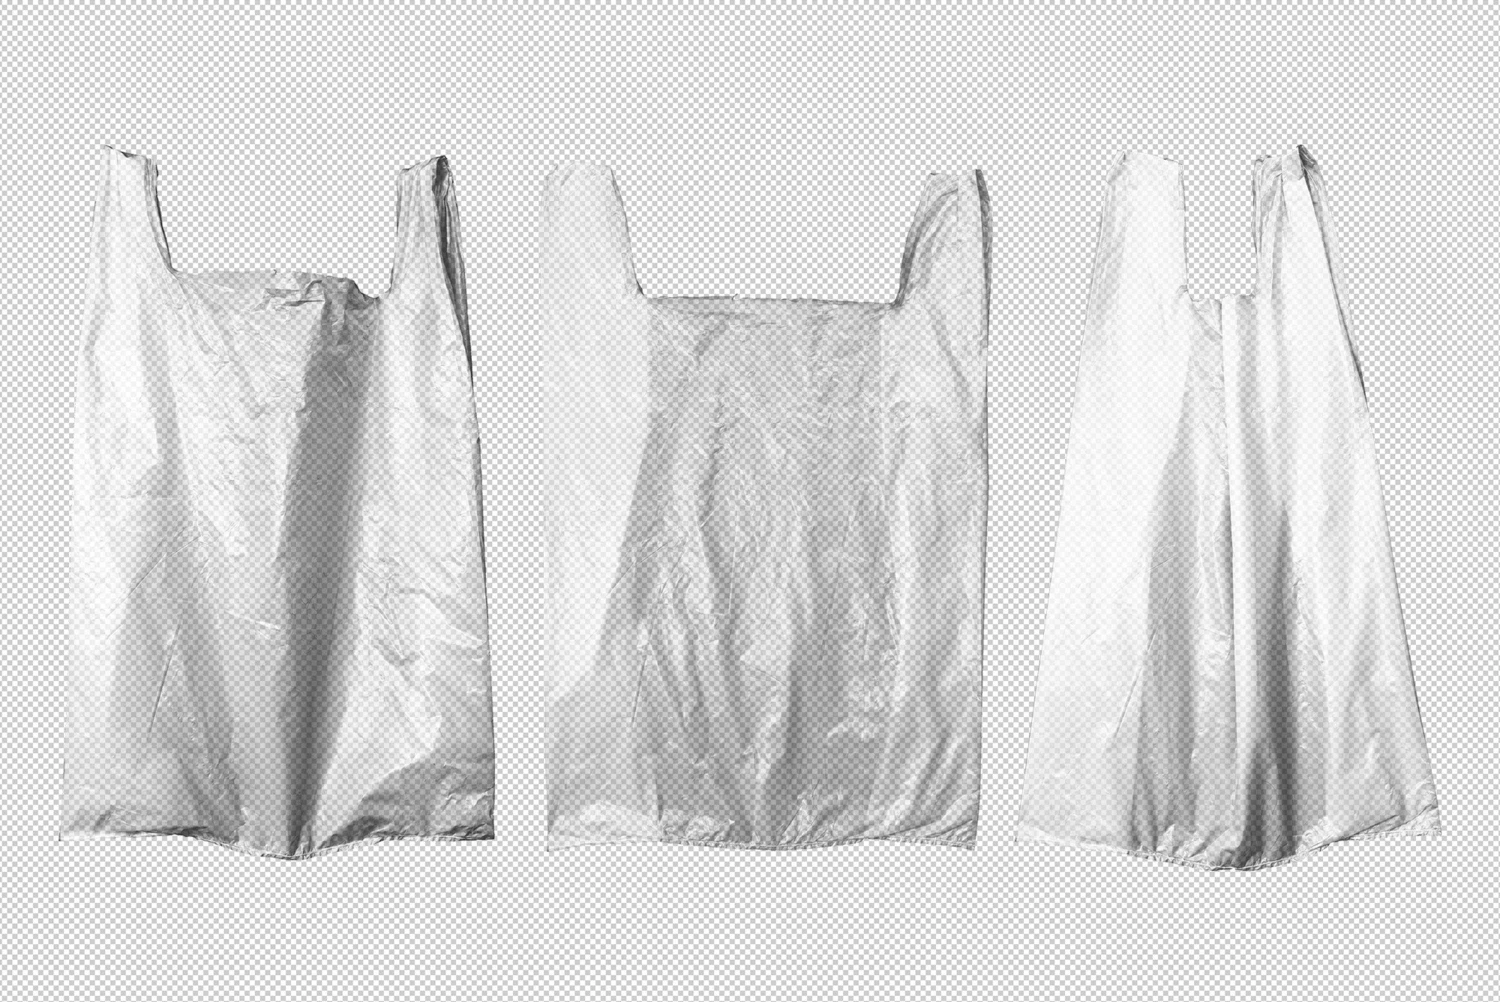 2648 环保塑料购物纸袋垃圾袋包装设计贴图样机PSD模型 Plastic Shopping Bag Mockup